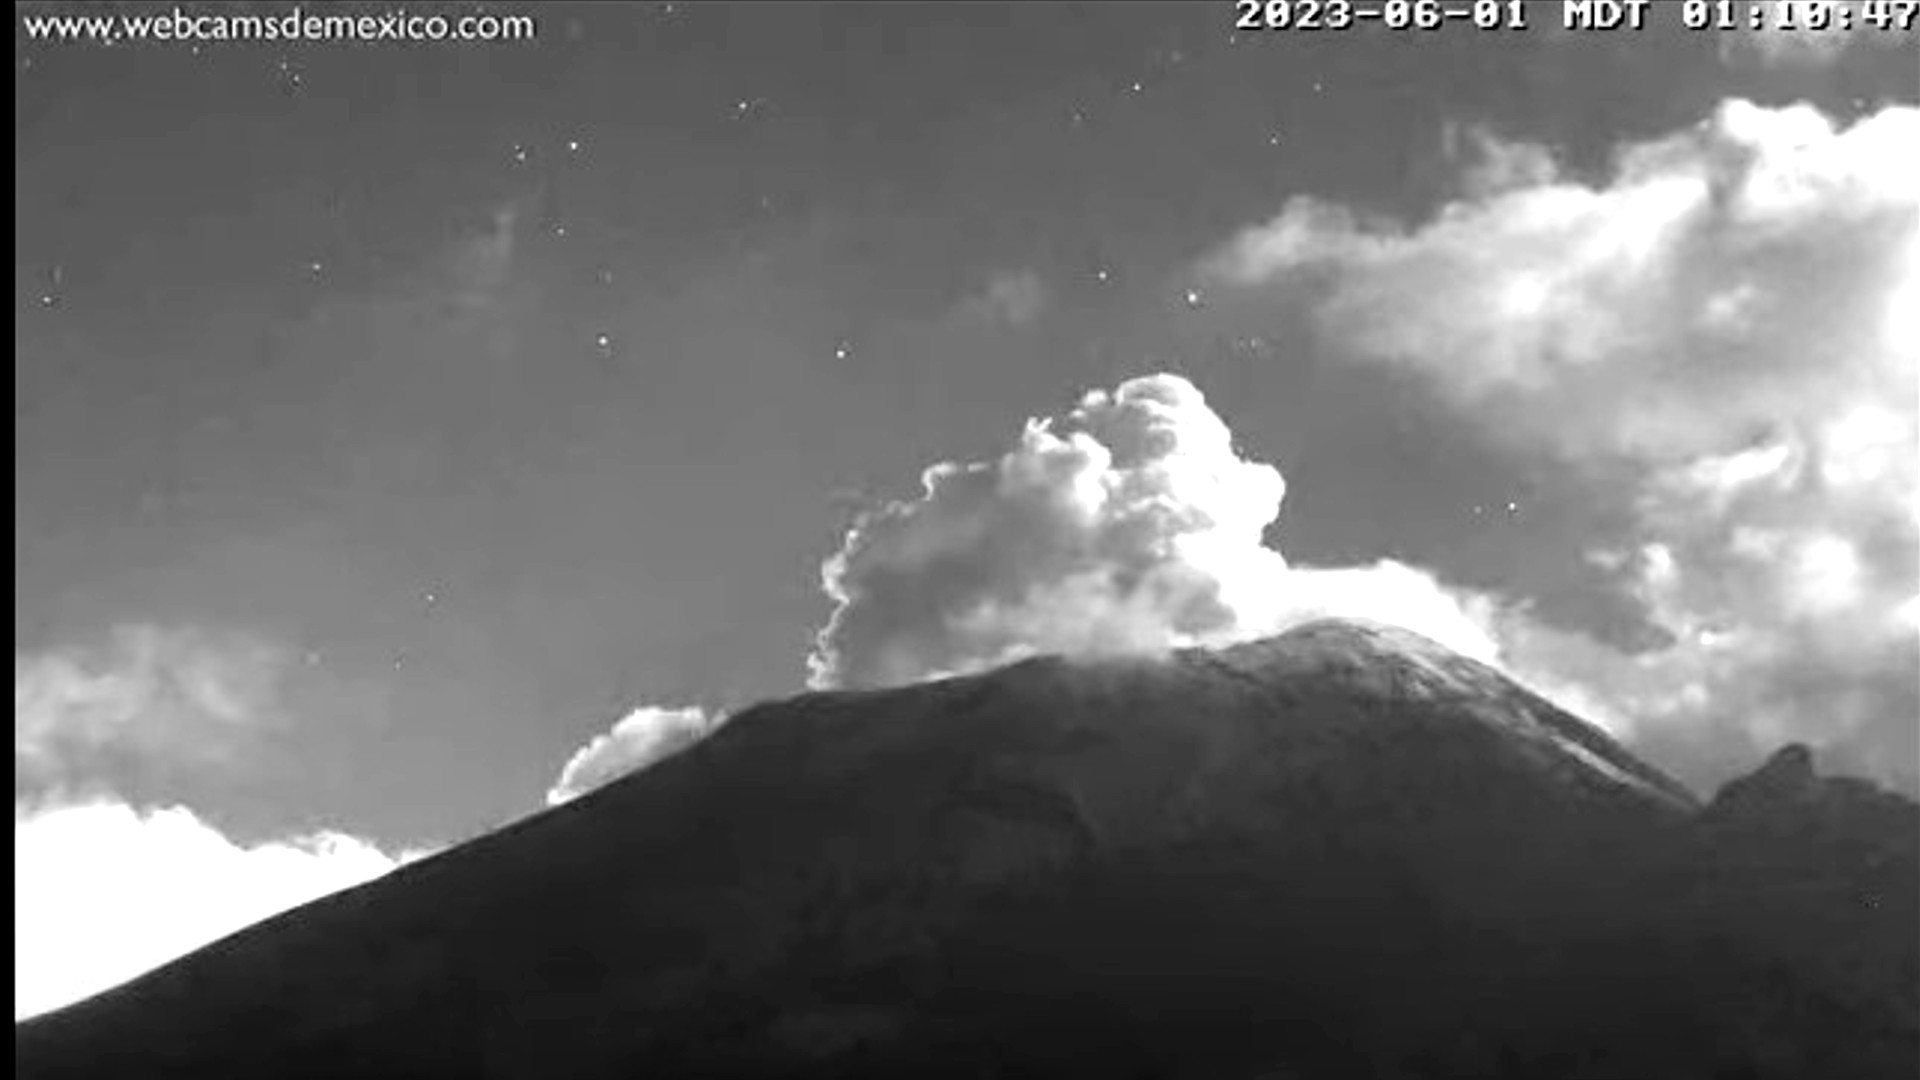 Volcán Popocatépetl hoy 1 de junio: alertan caída de ceniza en alcaldías de la CDMX